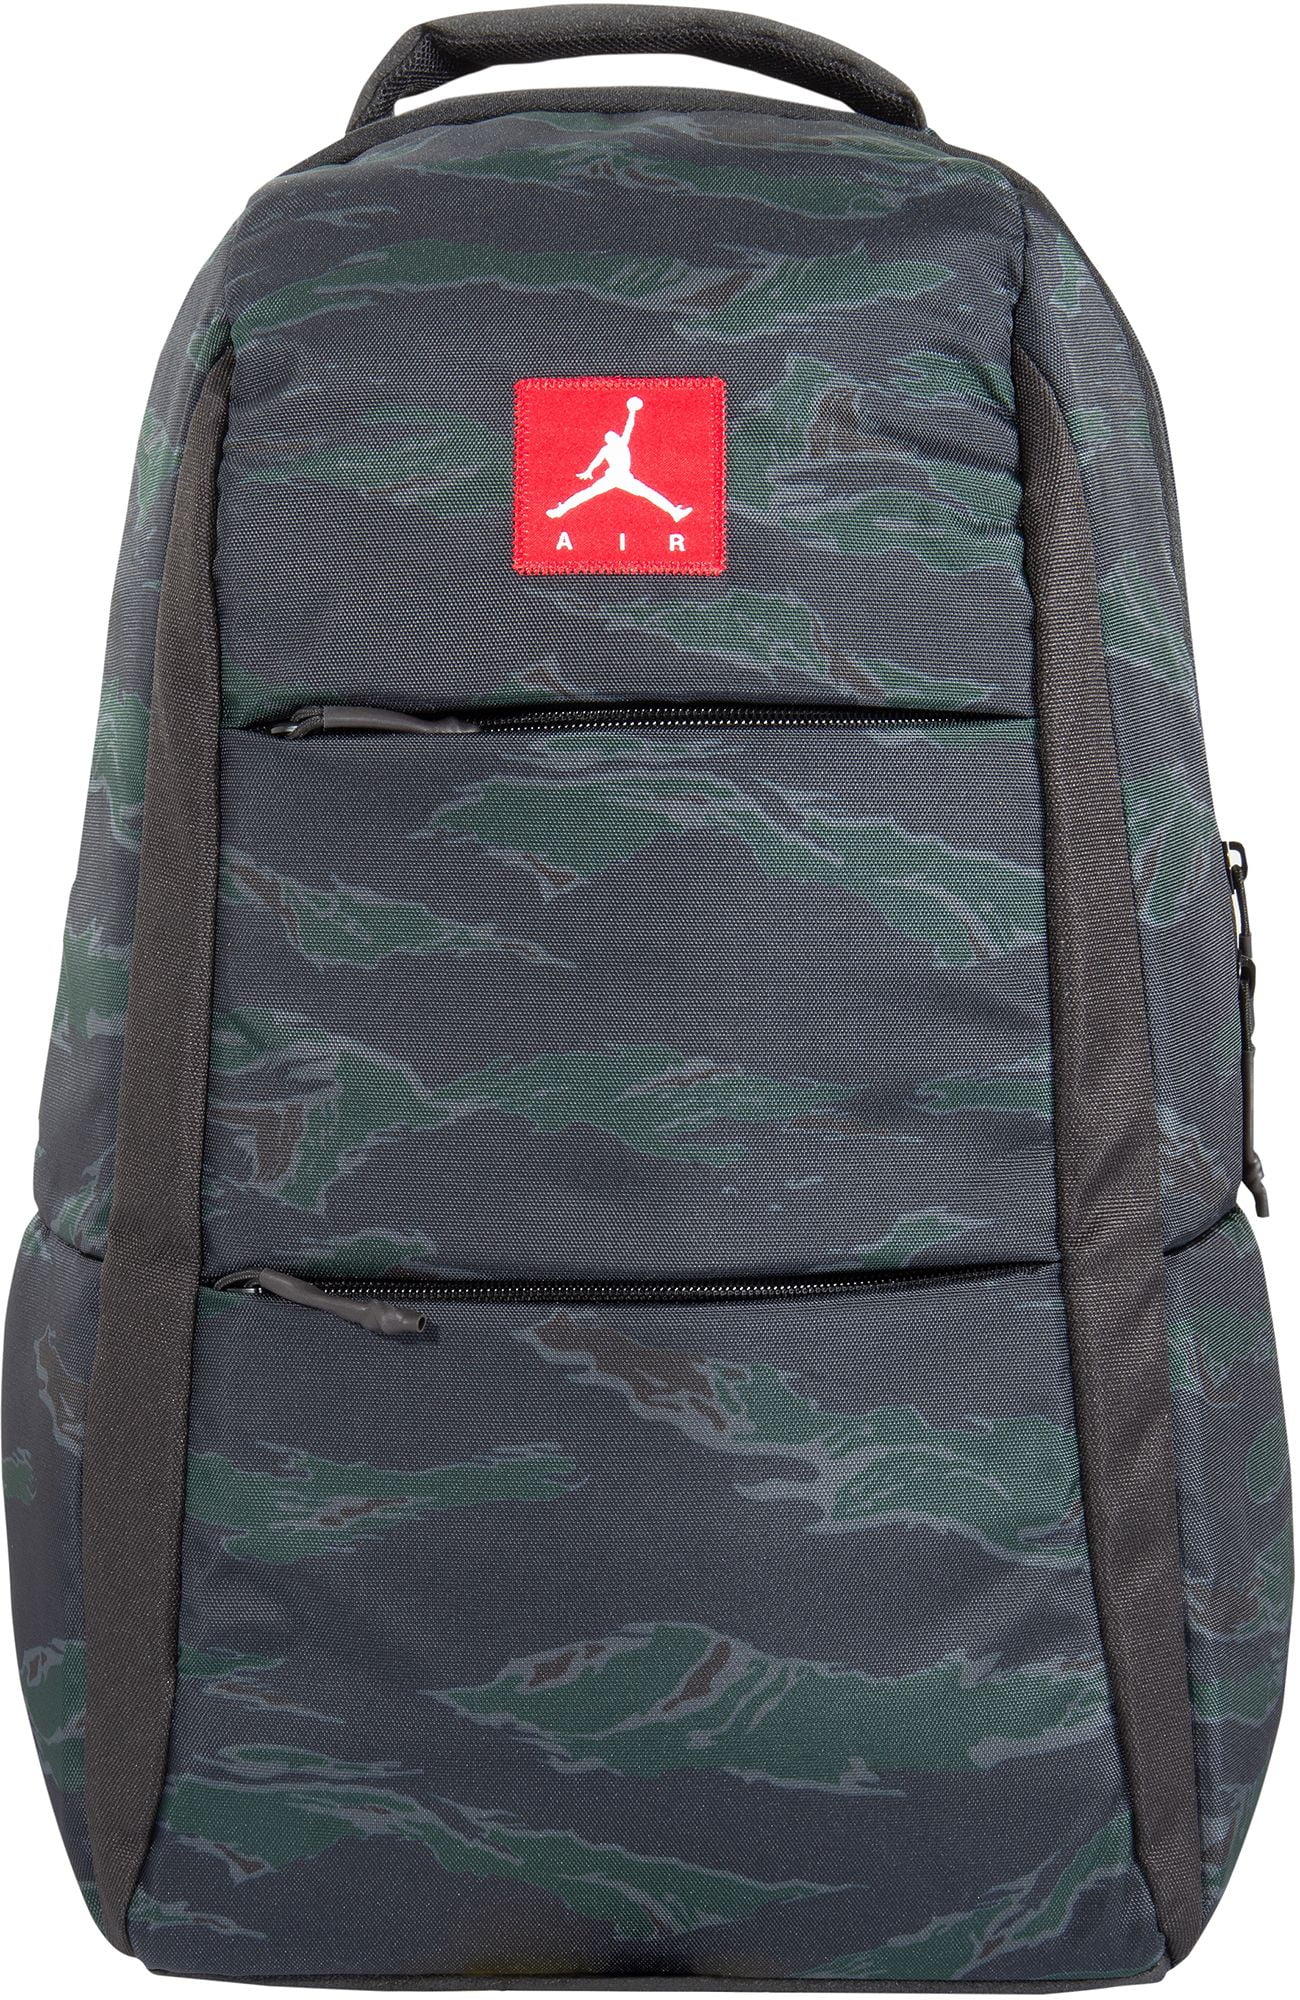 Jordan - Jordan Alias Camo Backpack 